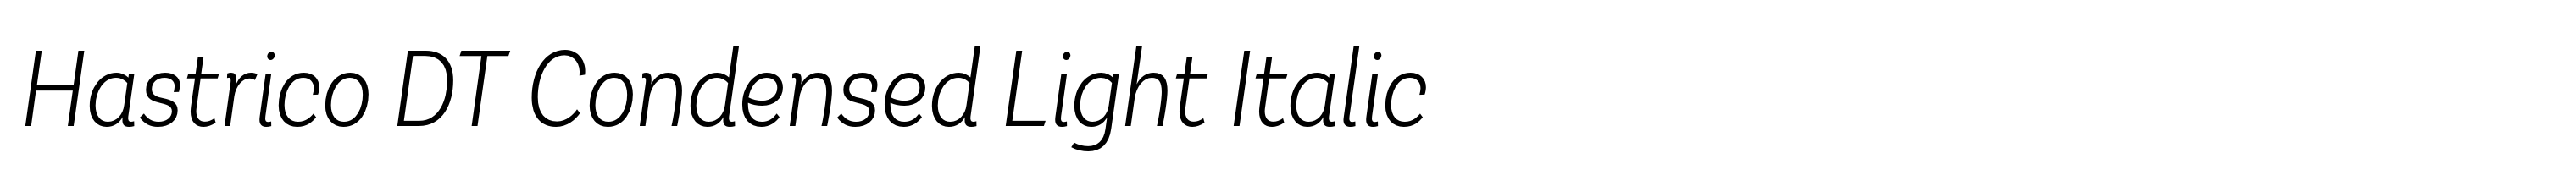 Hastrico DT Condensed Light Italic